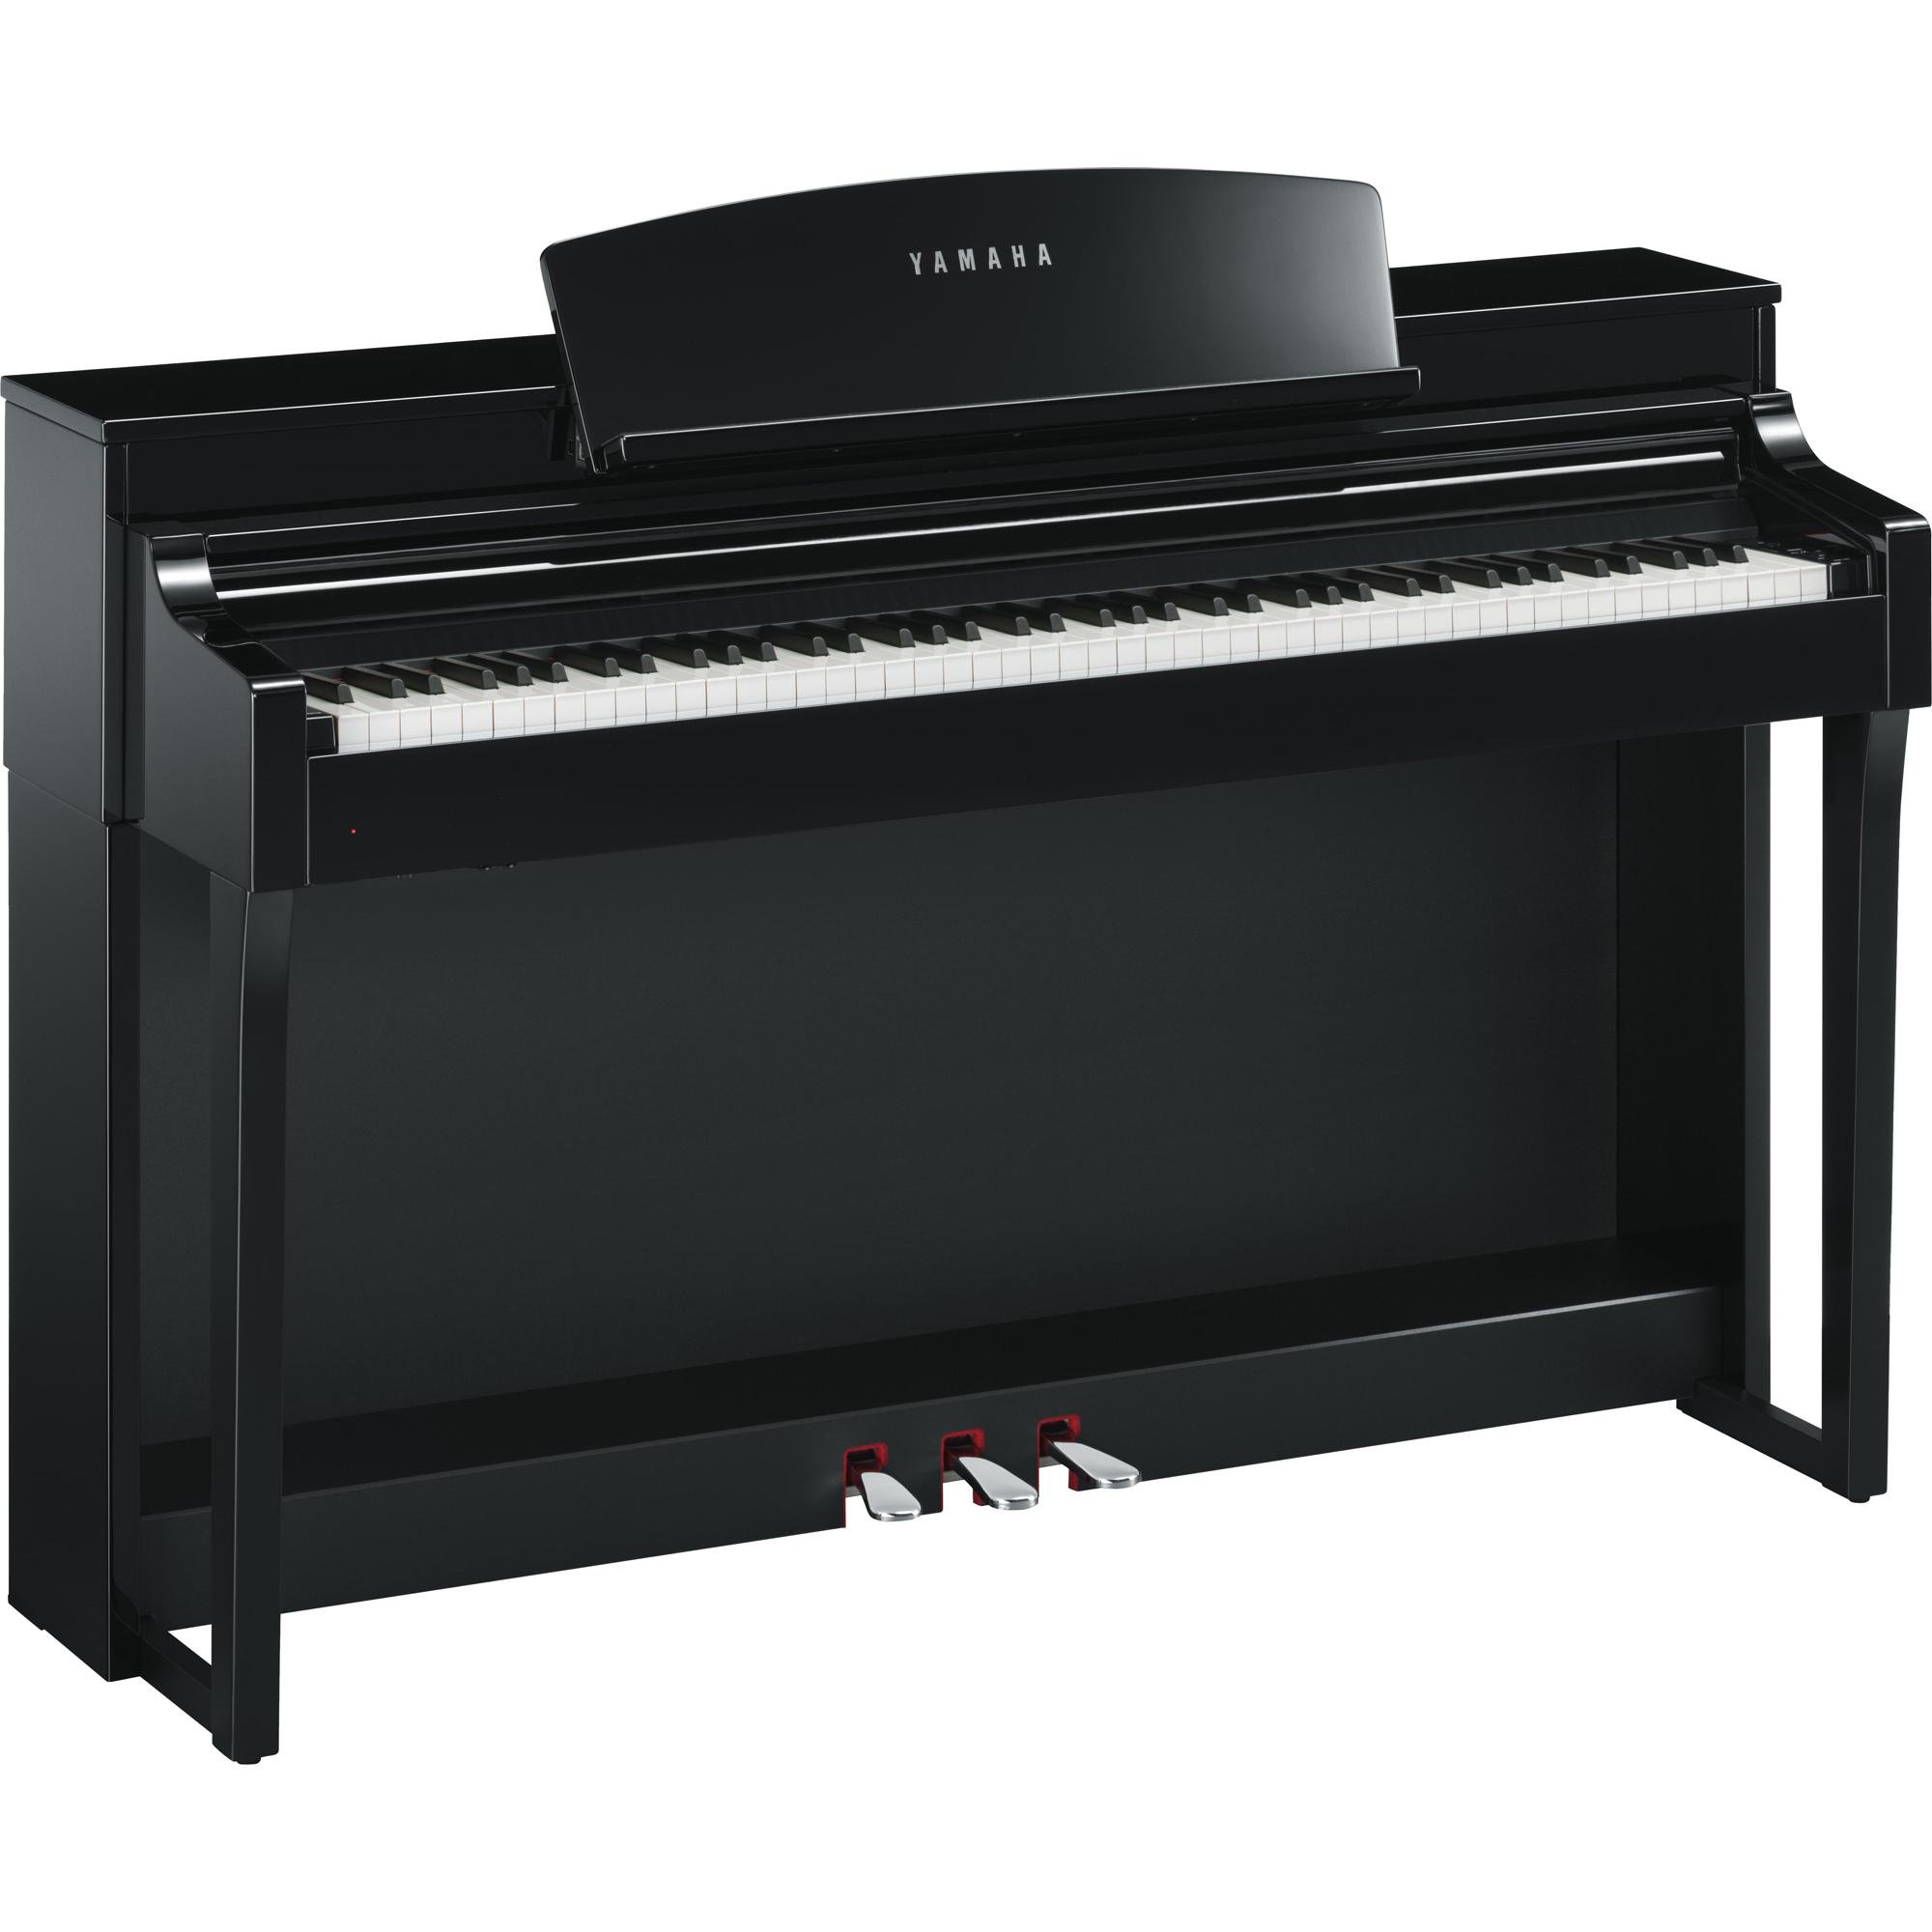 Piano Digital Yamaha Clavinova CSP-150 Preto Polido